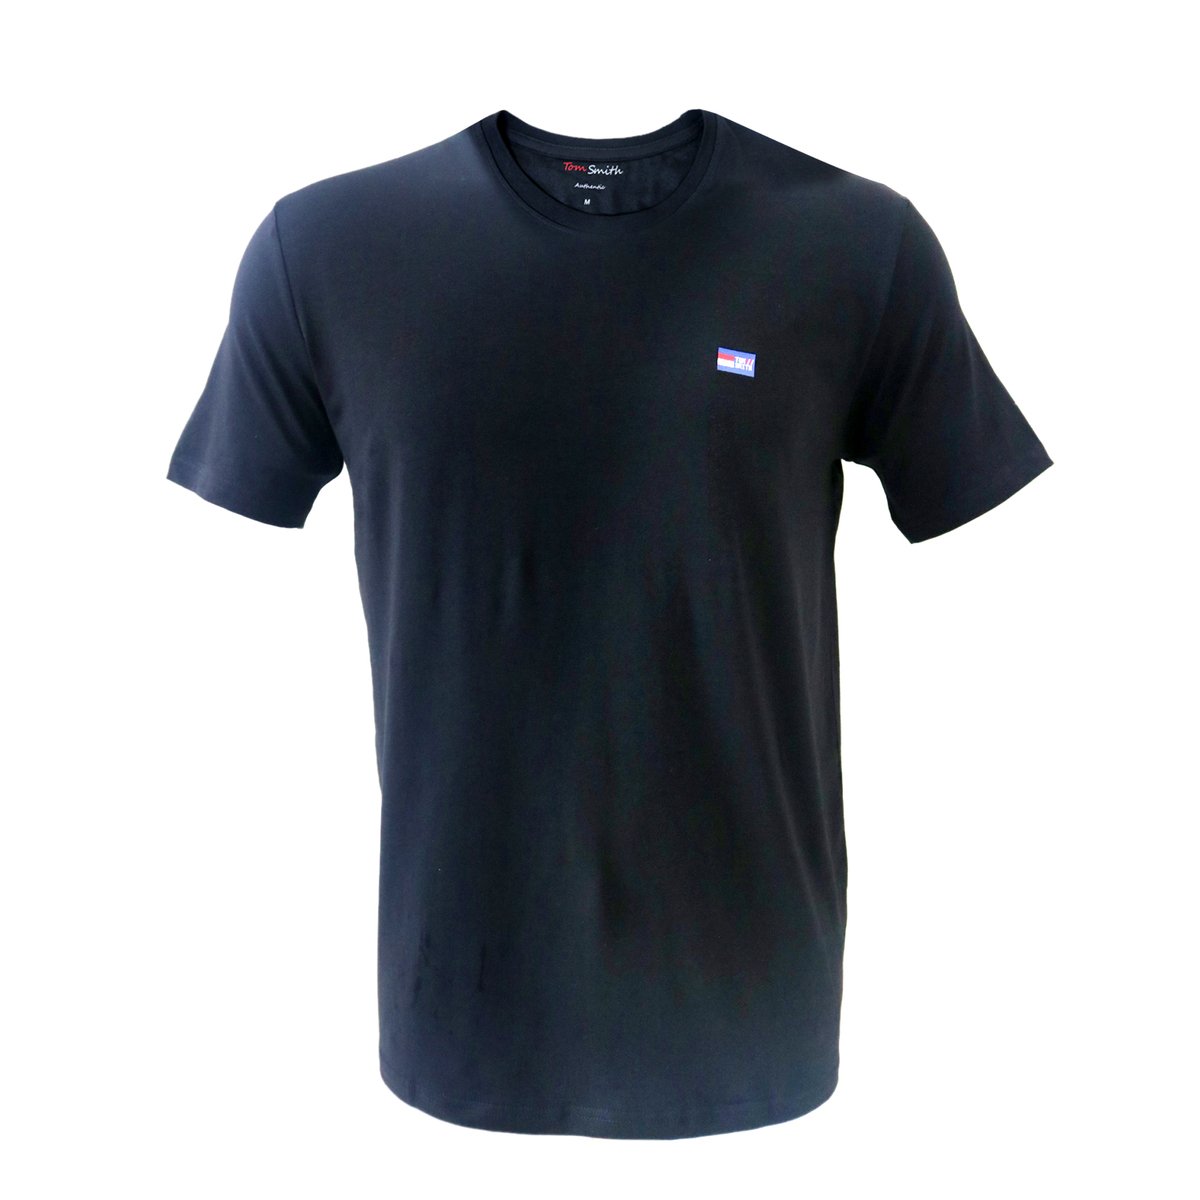 Tom Smith Basic Round Neck T-Shirt Black - XXL